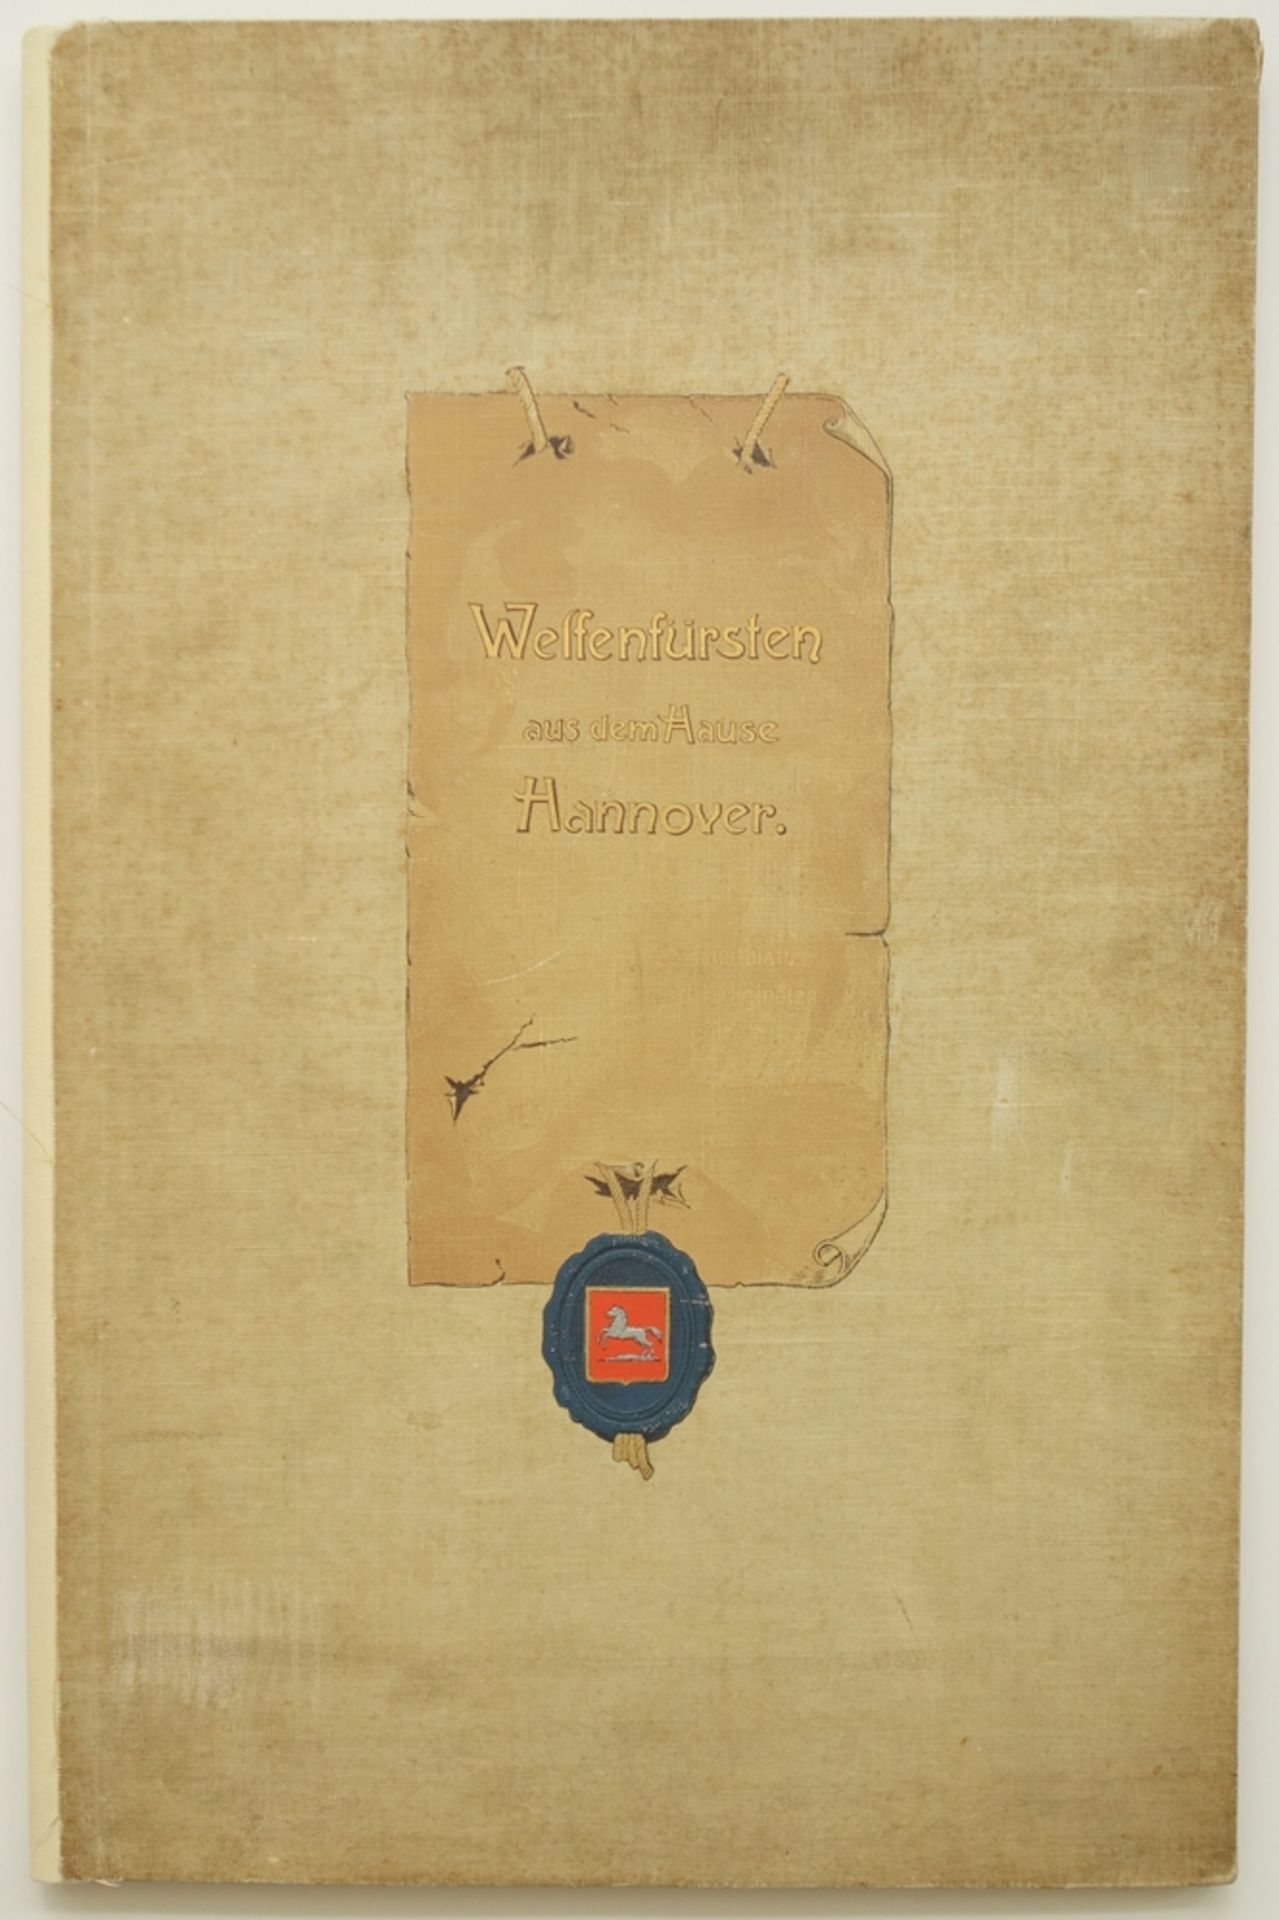 Leinen-Flügelmappe, "Welfenfürsten aus dem Hause Hannover", 1903, Leermappe für Kunstblätter nach